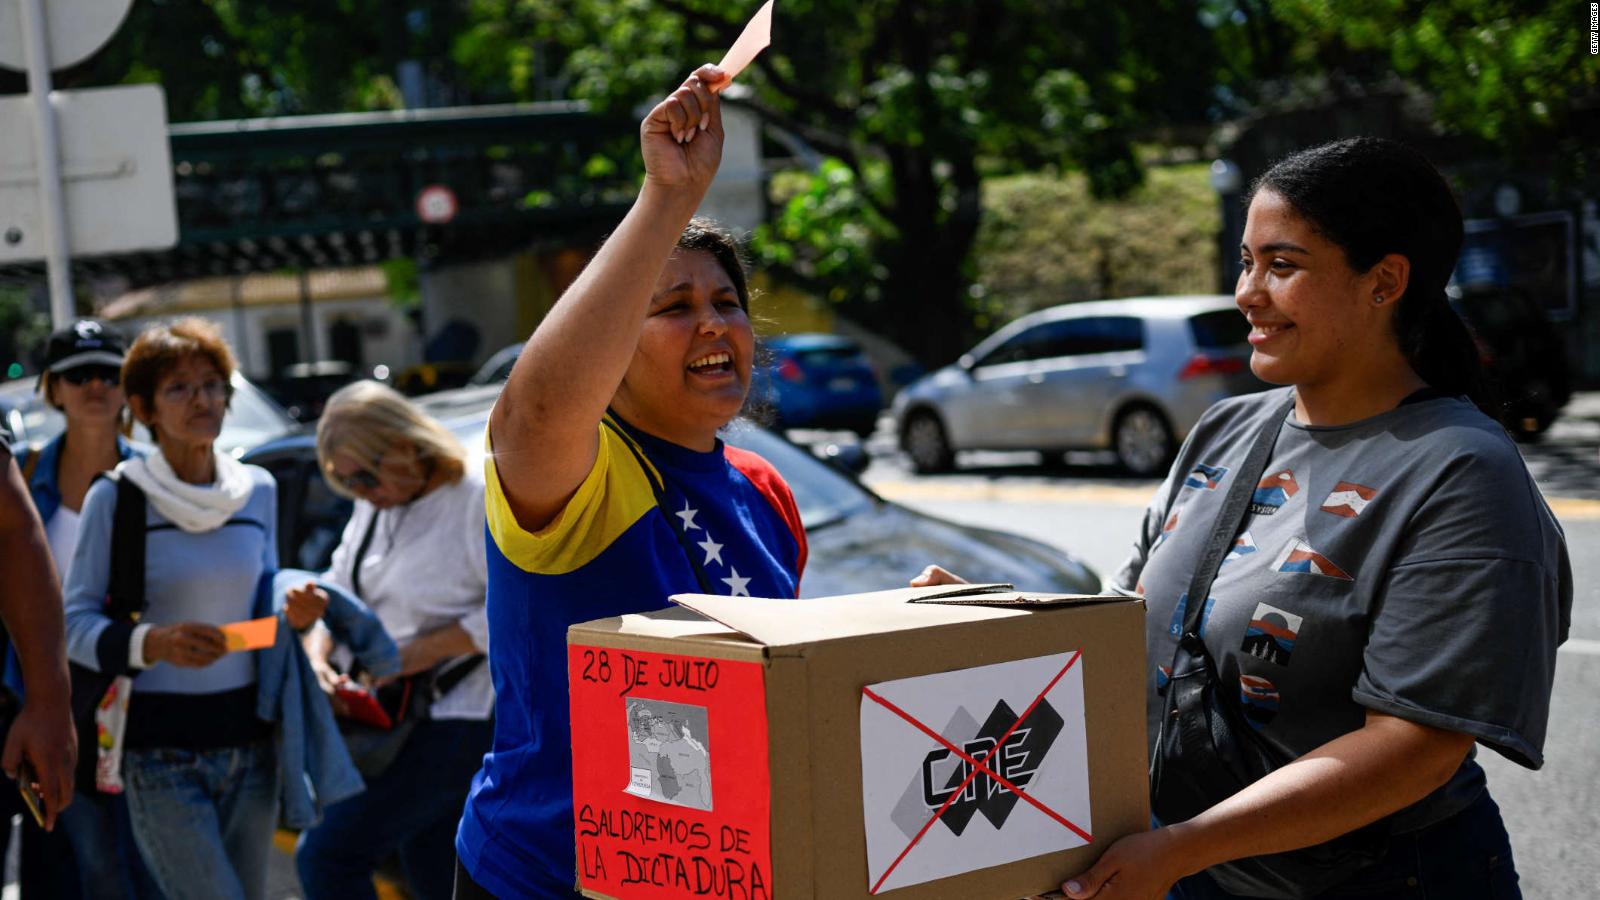 "Están pasando cosas muy graves", opinó experto con relación al
proceso electoral de Venezuela